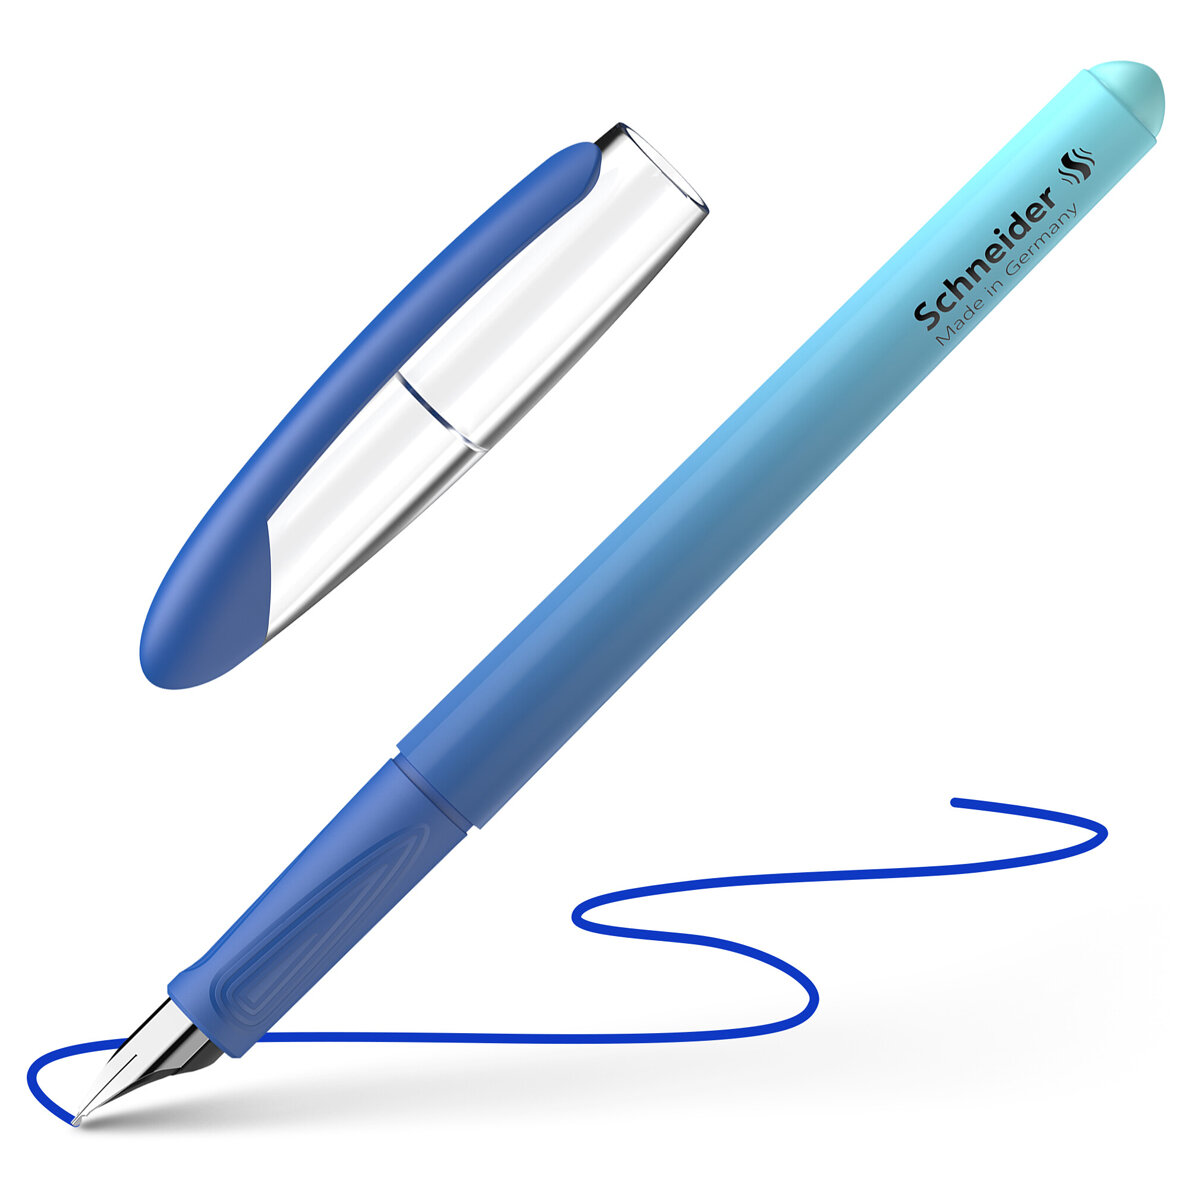 Ручка перьевая "Voyage caribbean" 1 картридж, грип, сине-голубой корпус 161146 синяя | Магазин канцтоваров и игрушек Львёнок